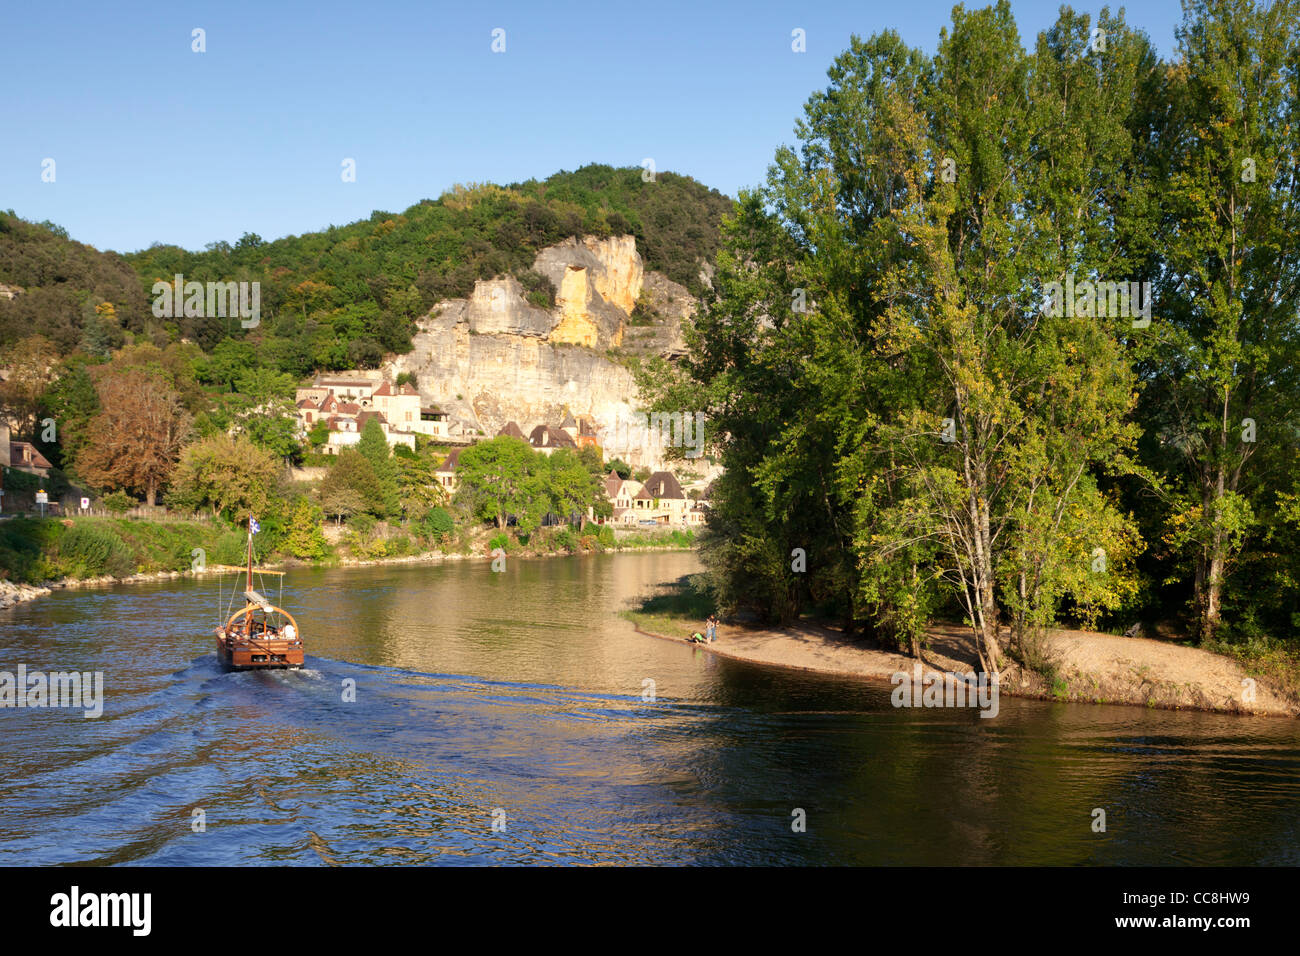 Nel tardo pomeriggio la luce sul fiume Dordogne, Aquitania, in Francia, come gabarre o battello fluviale, si avvicina La Roque-Gageac. Foto Stock